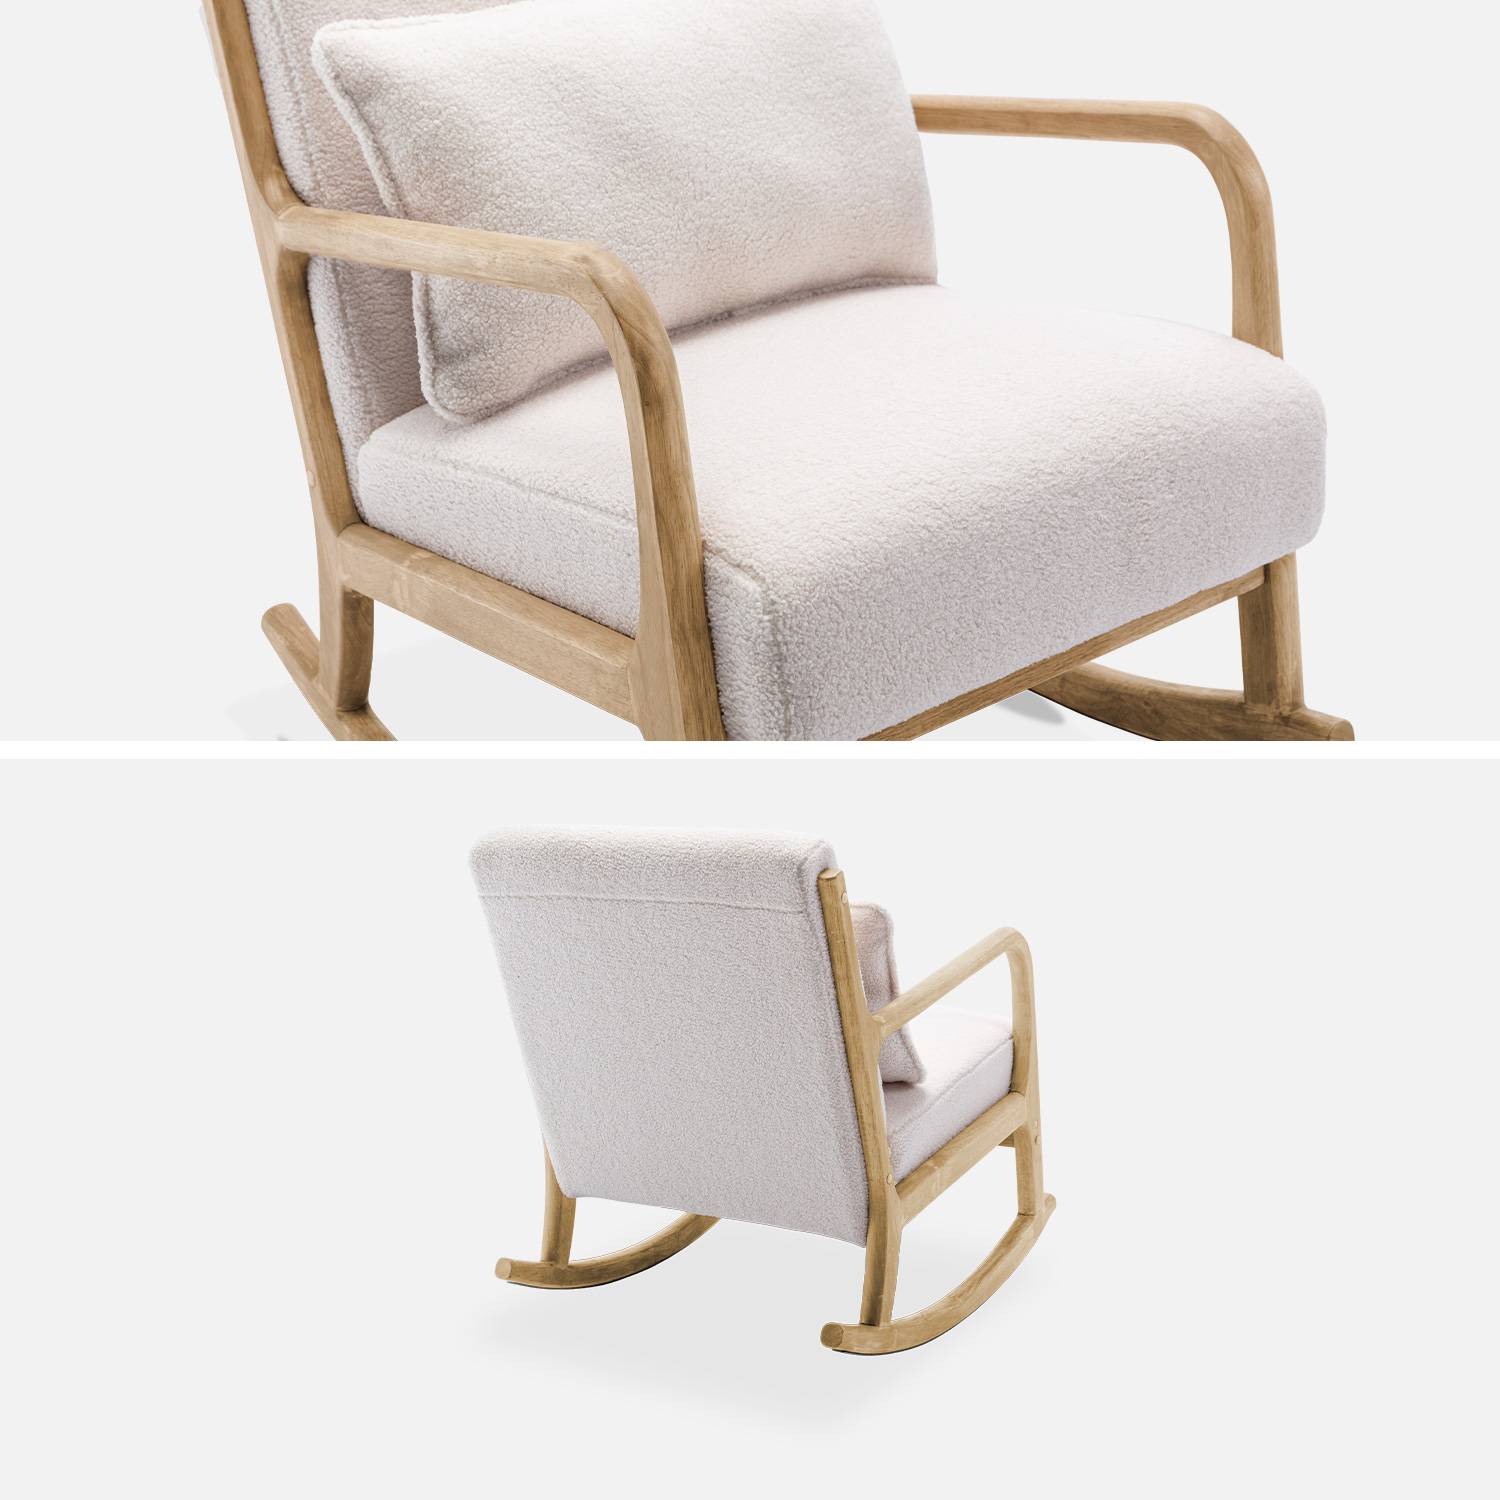 Fauteuil à bascule design en bois et tissu, bouclettes blanches, 1 place, rocking chair scandinave Photo7